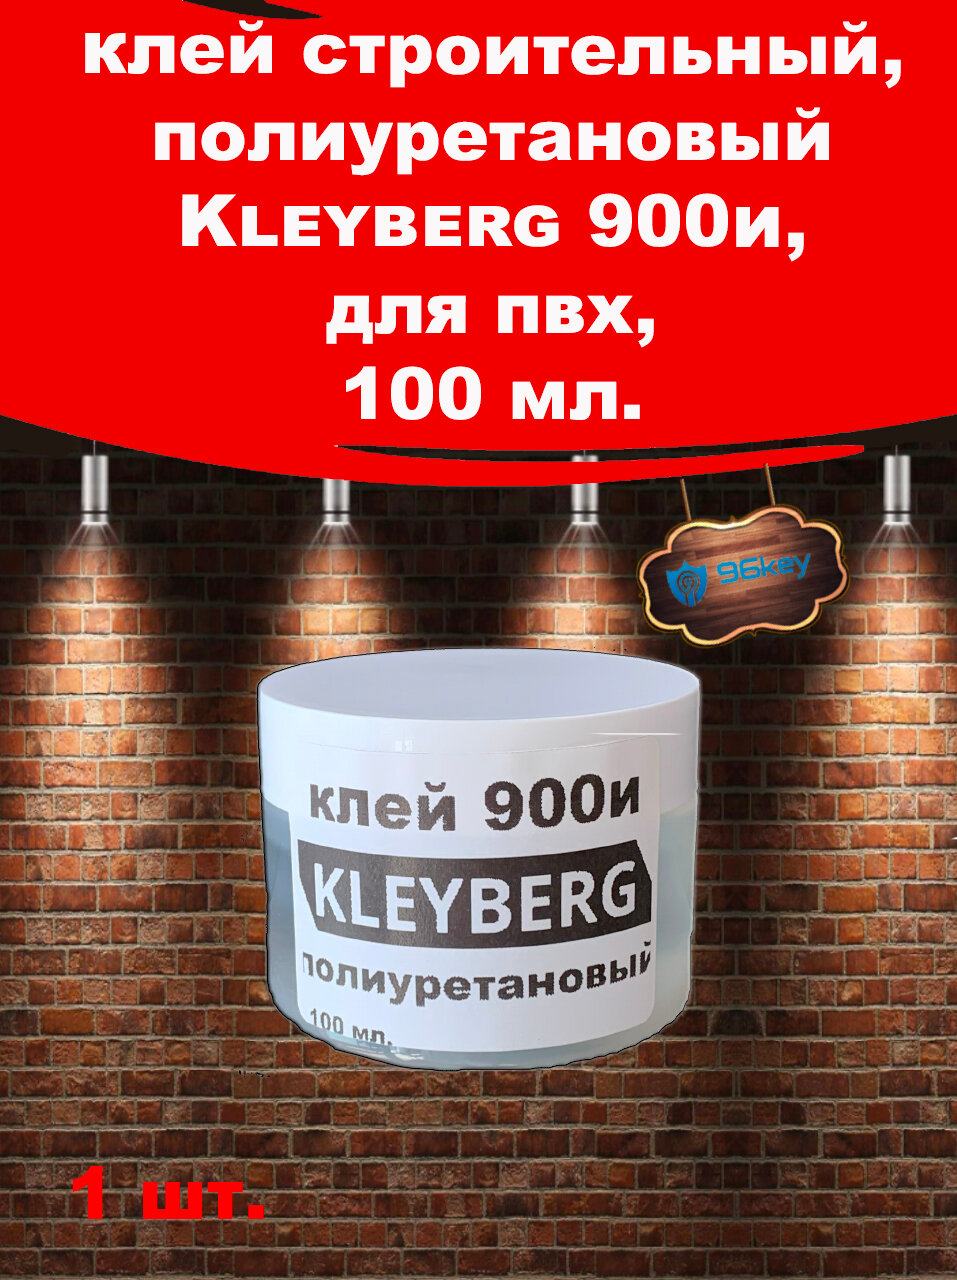 Клей KLEYBERG 900И полиуретановый (100мл) цв. прозрачный (Россия)/десмокол/клей обувной